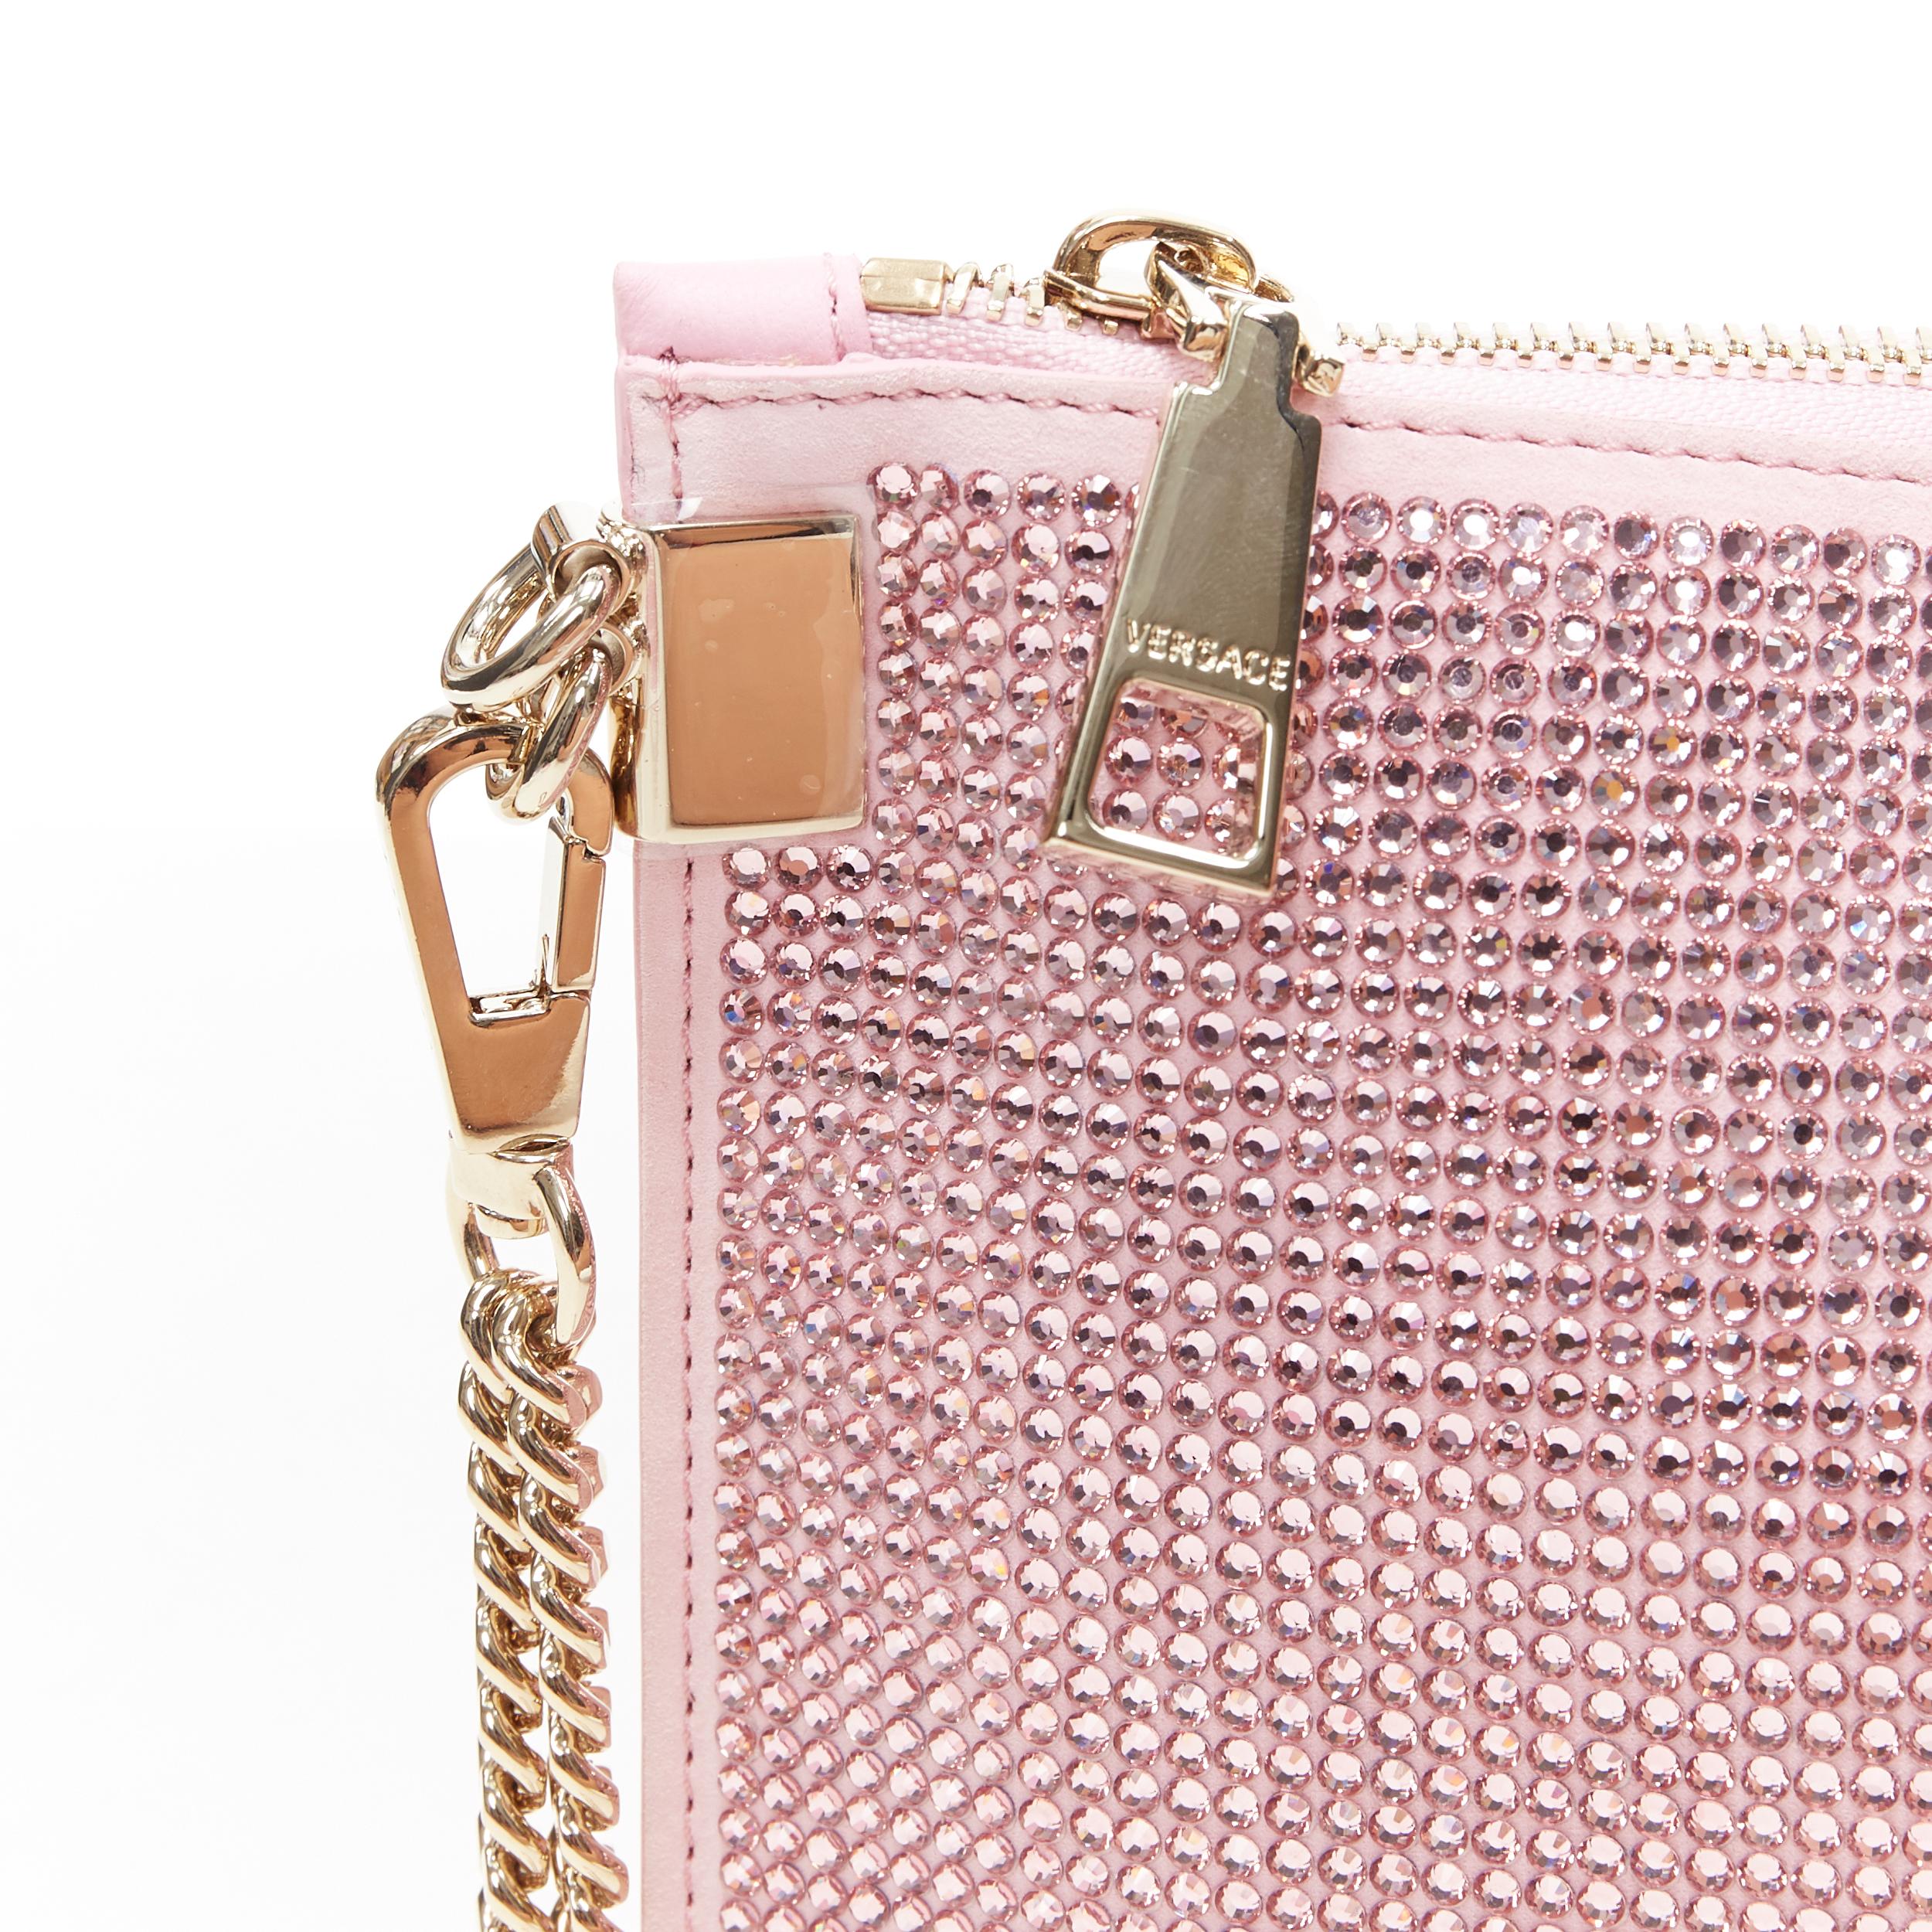 Beige new VERSACE pink strass crystal gold Medusa chain wristlet clutch shoulder bag